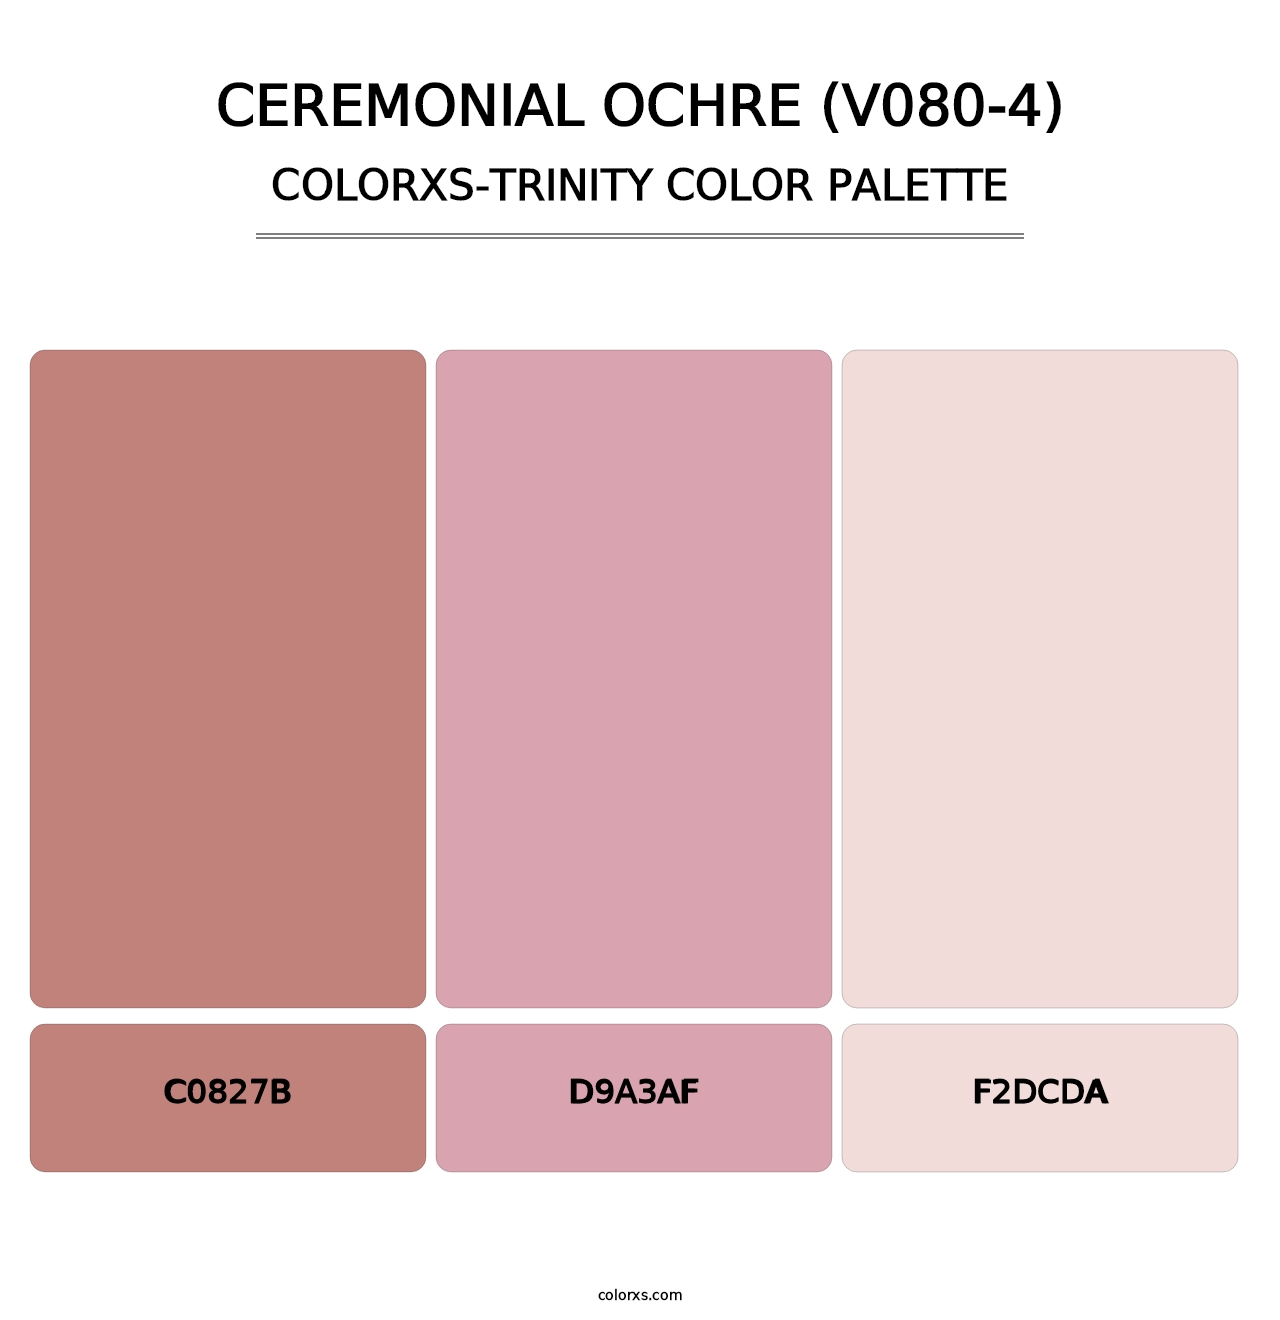 Ceremonial Ochre (V080-4) - Colorxs Trinity Palette